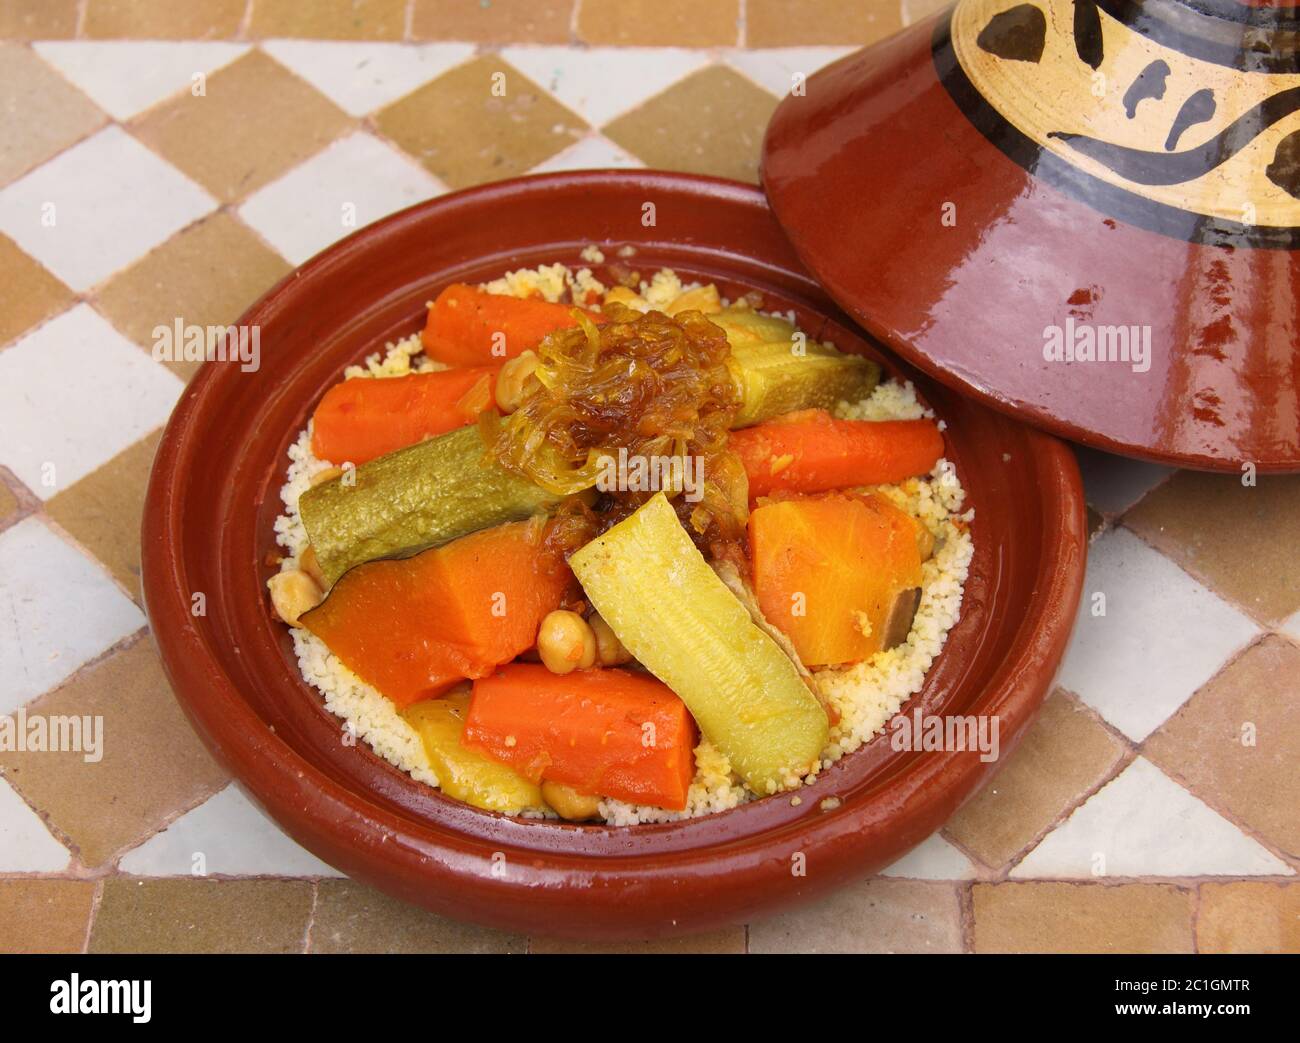 Marokkanisches Essen. Typische Tontajine mit Couscous, Gemüse und Huhn  Stockfotografie - Alamy